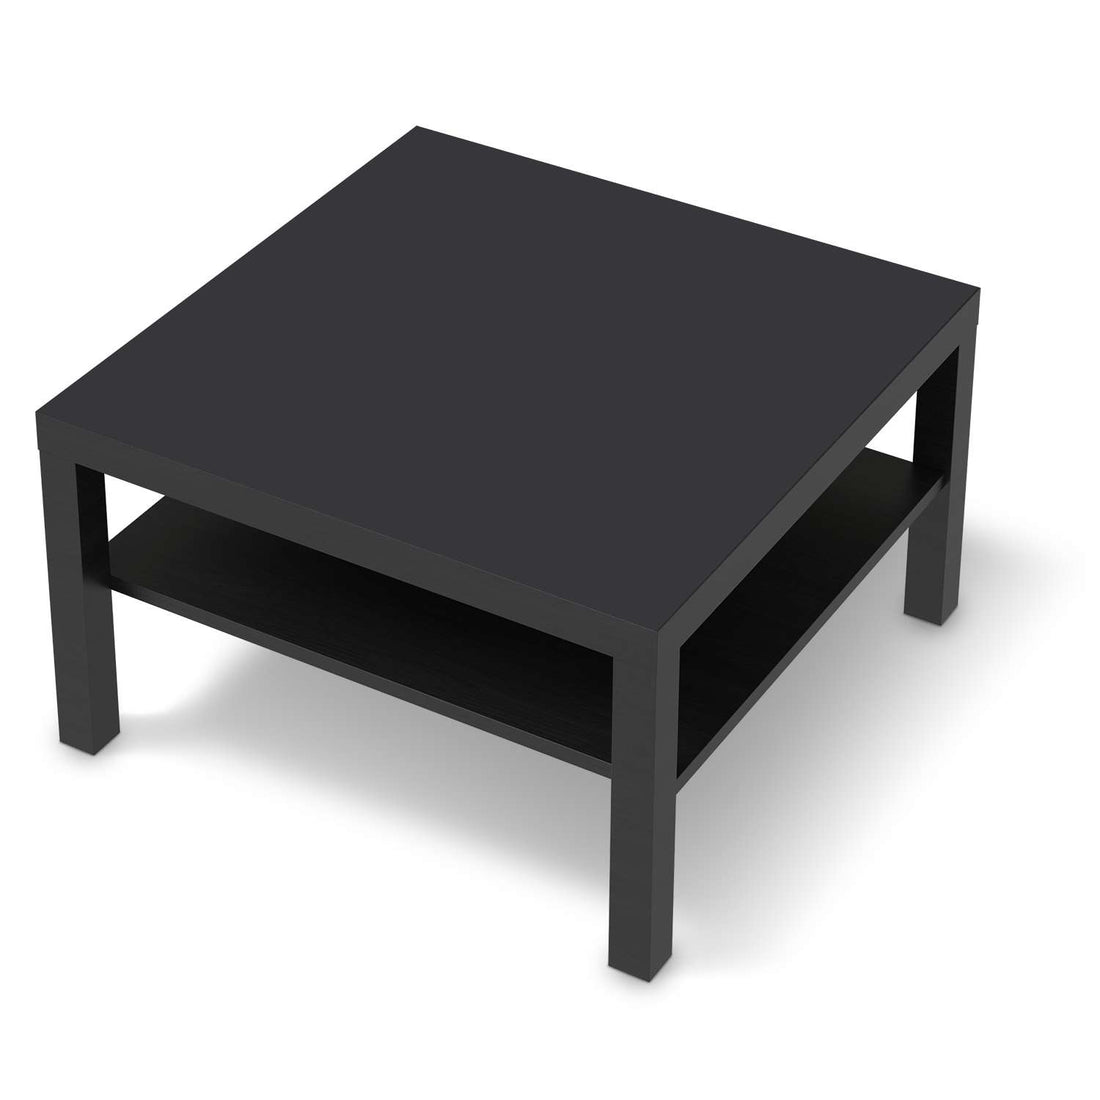 Selbstklebende Folie Grau Dark - IKEA Lack Tisch 78x78 cm - schwarz